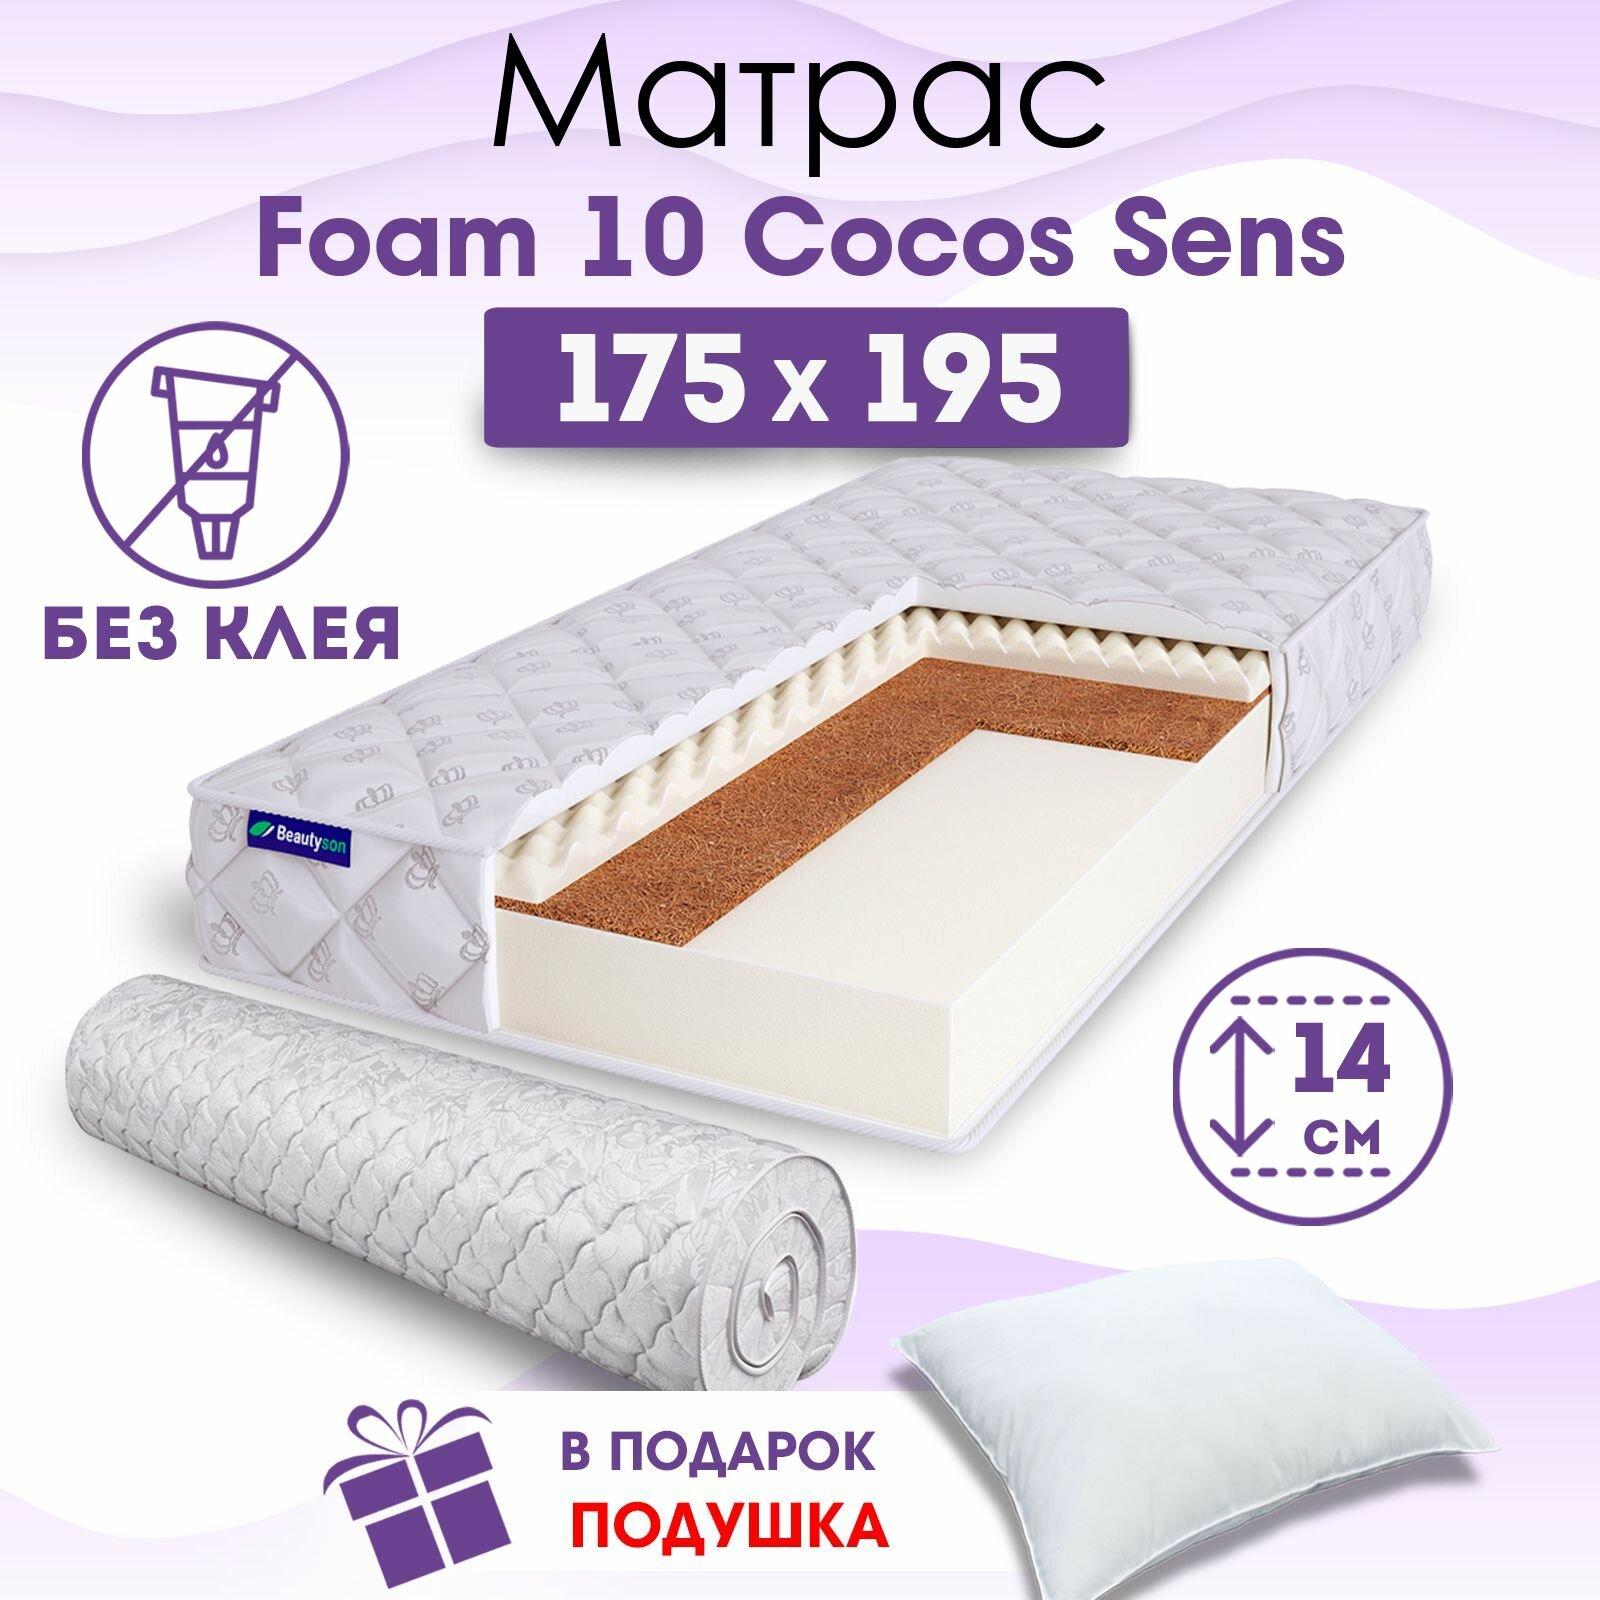 Ортопедический матрас Beautyson Foam 10 Cocos Sens без клея, 175х195, 14 см, беспружинный, двухспальный, на кровать, для дивана, умеренно мягкий